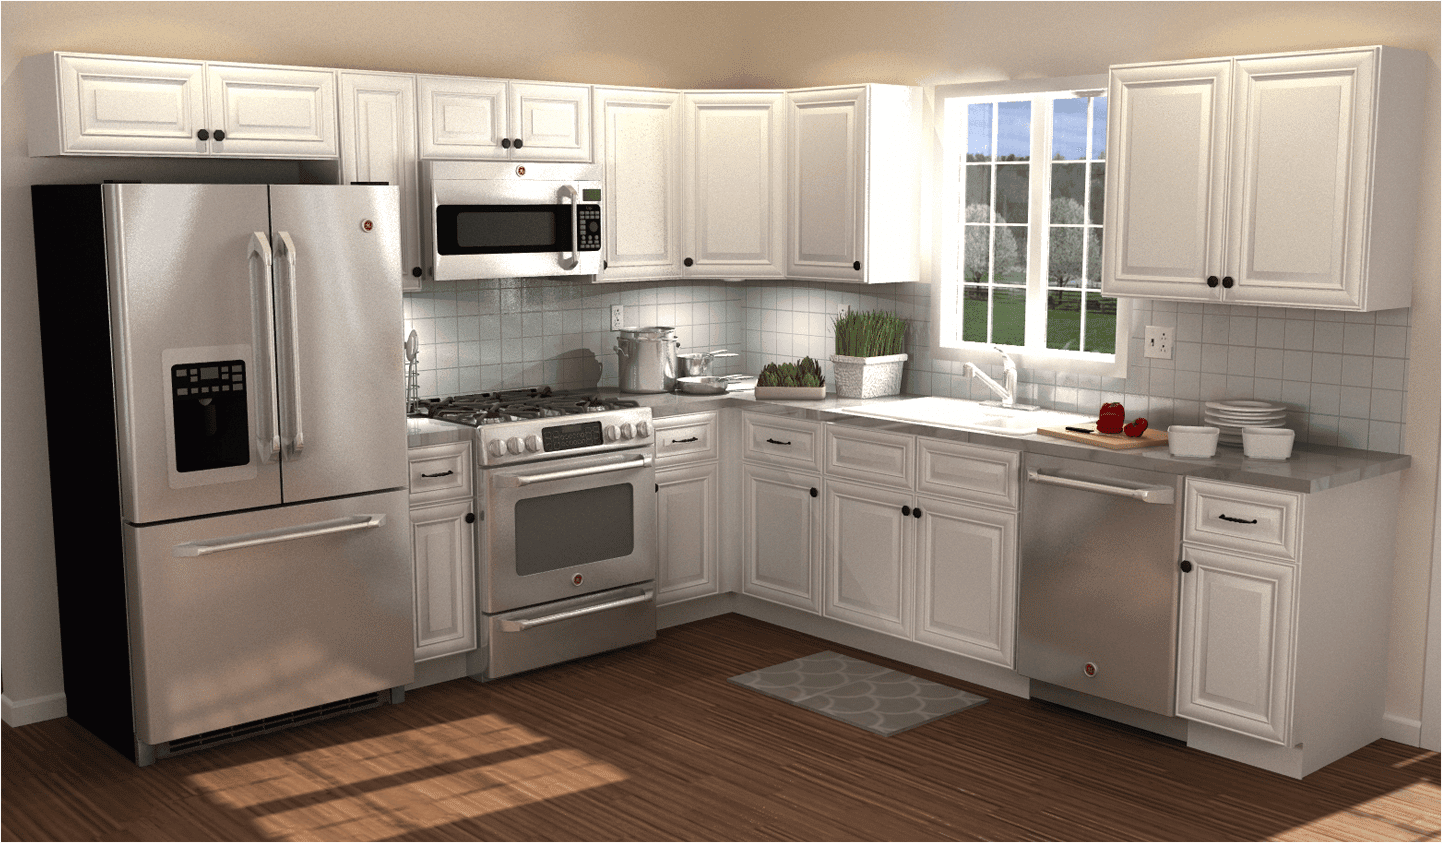 10 x 11 kitchen design